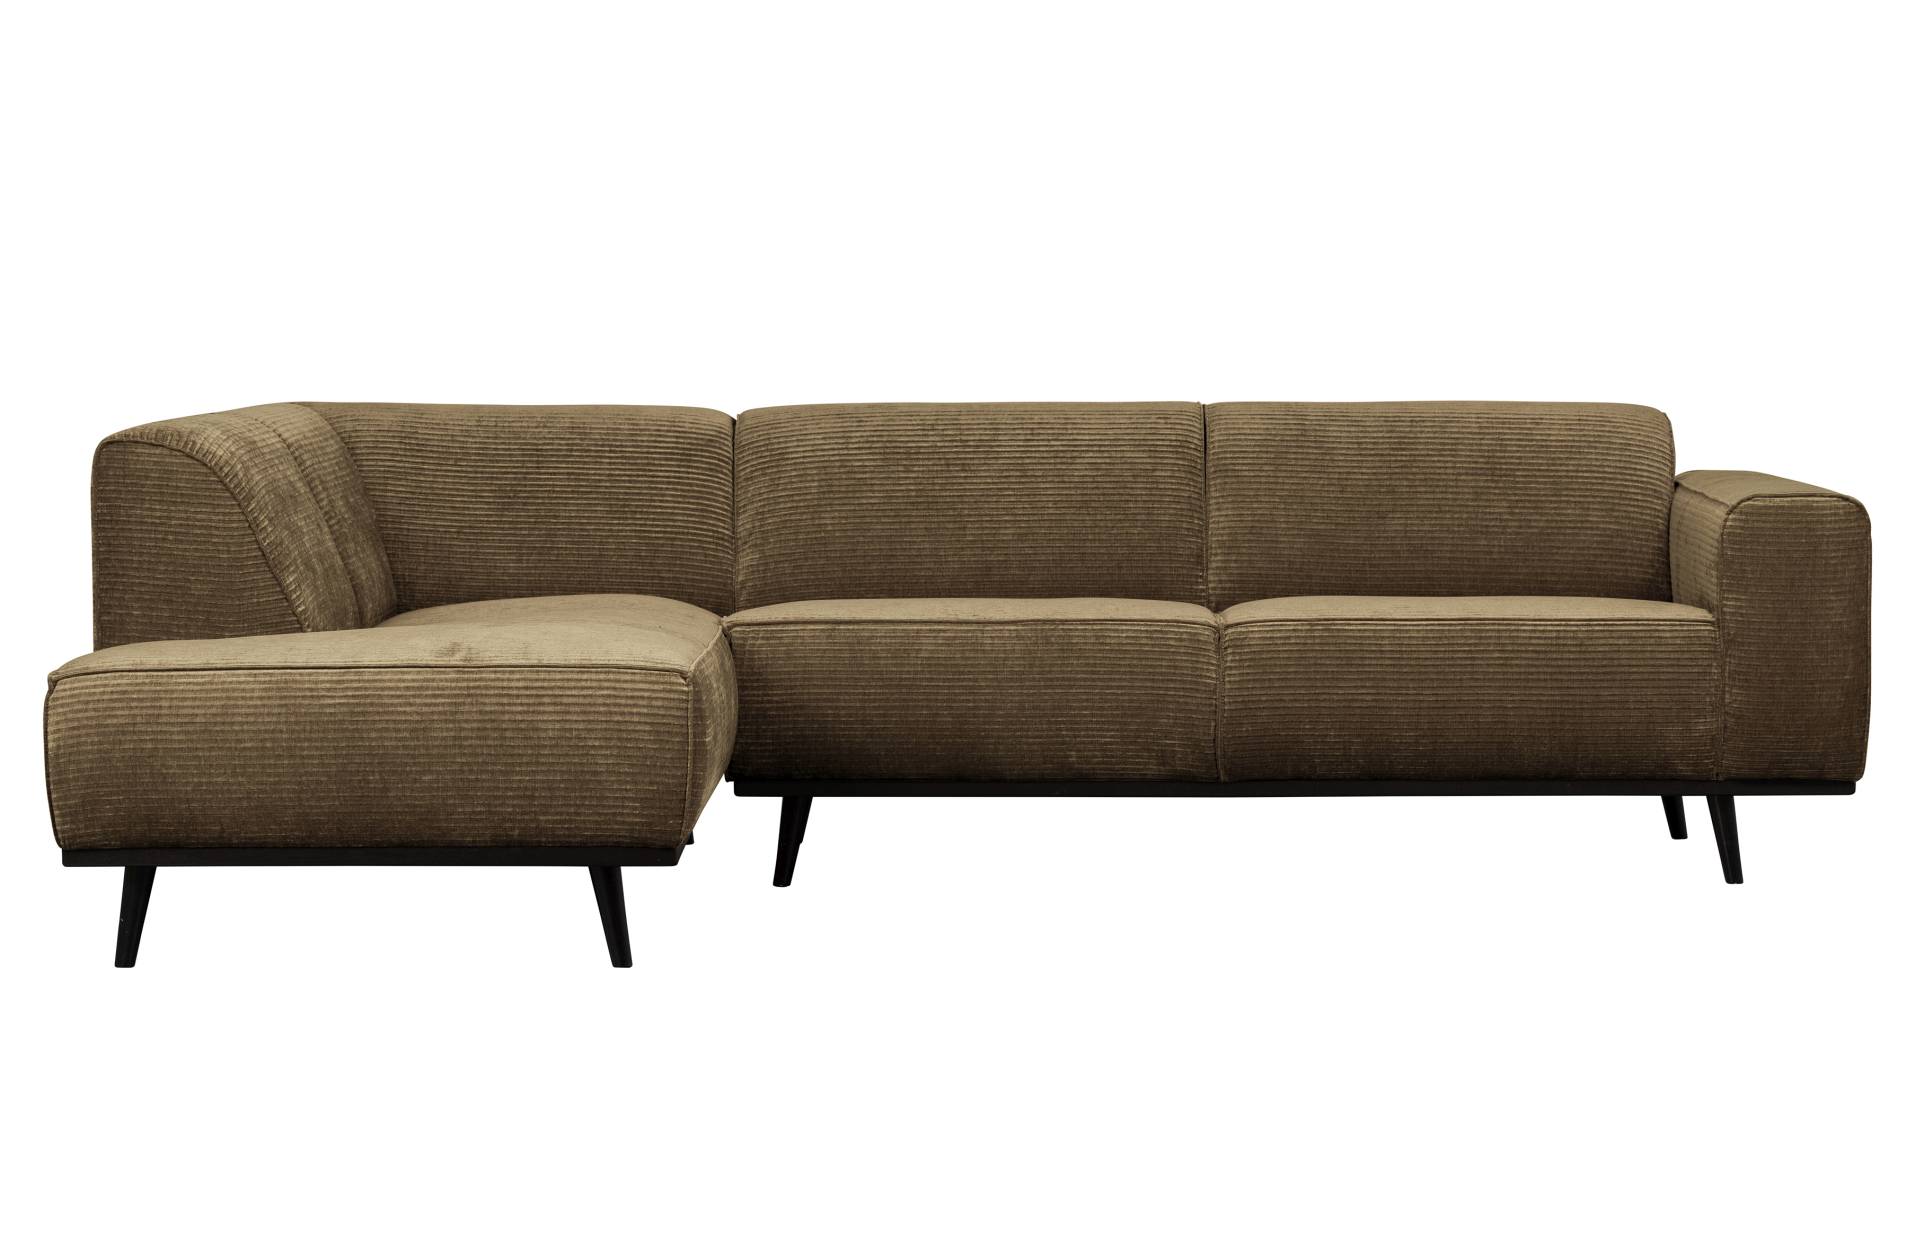 Das Ecksofa Statement überzeugt mit seinem modernen Design. Gefertigt wurde es aus gewebten Jacquard, welches einen braunen Farbton besitzen. Das Gestell ist aus Birkenholz und hat eine schwarze Farbe. Das Sofa hat eine Breite von 274 cm.